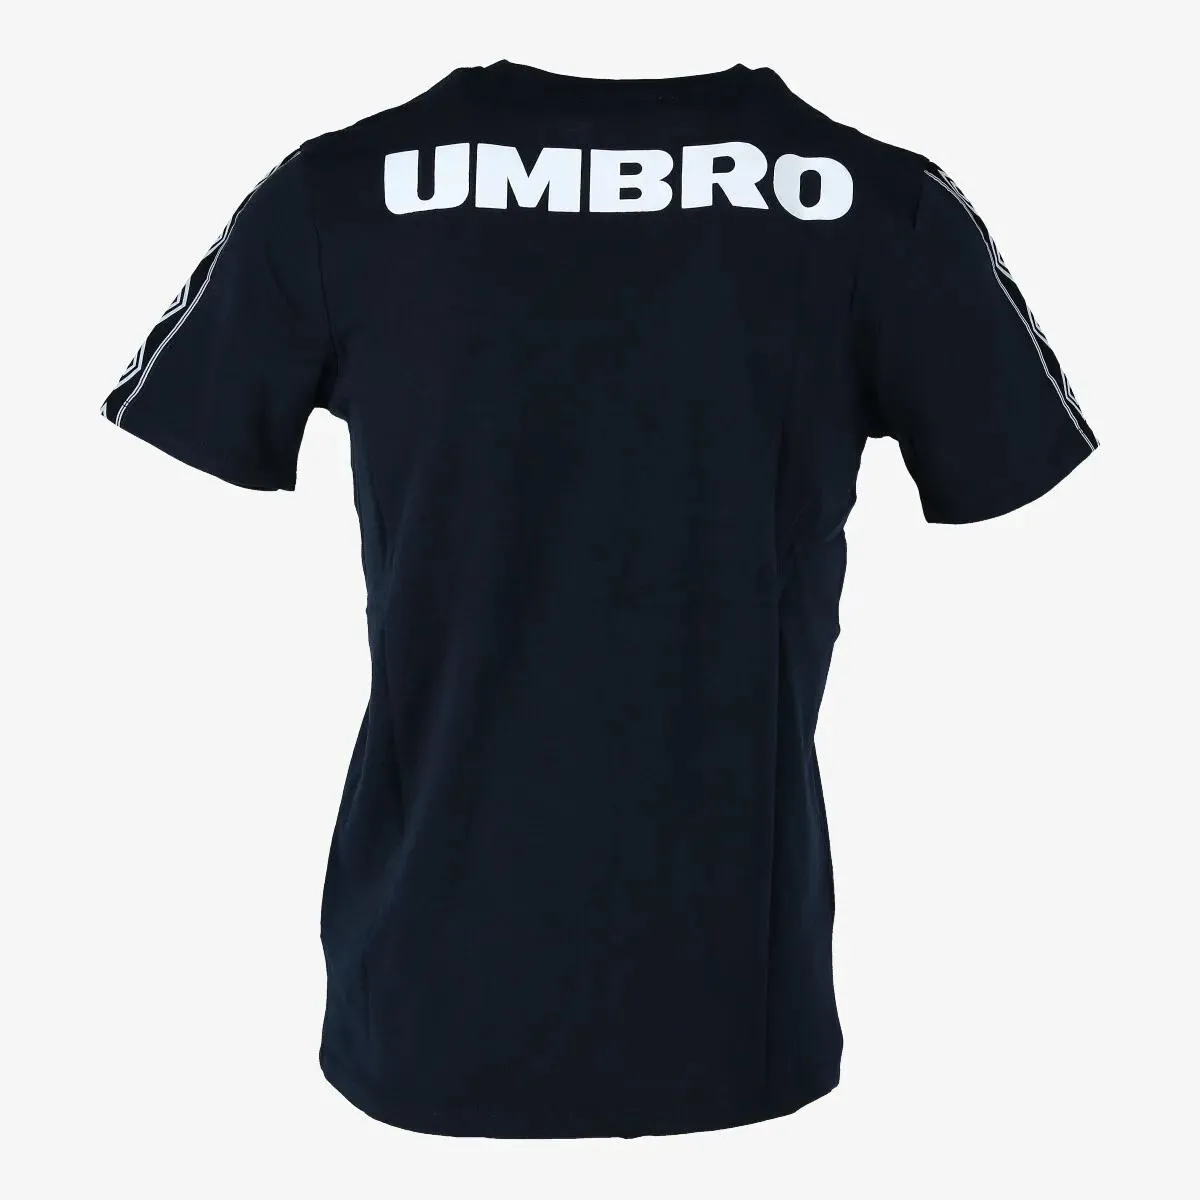 Umbro T-shirt RETRO 2 BIG LOGO 